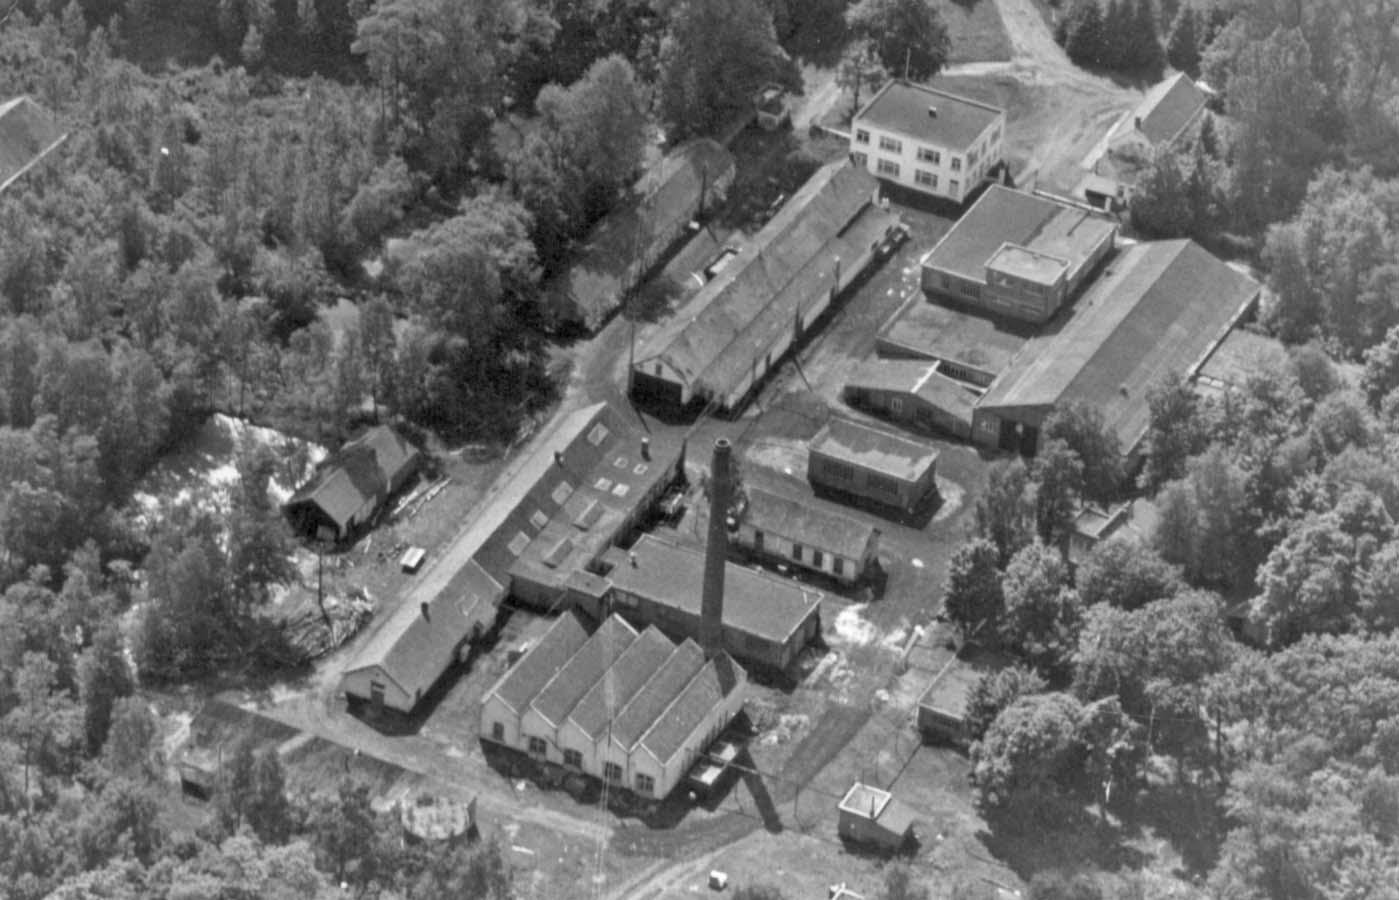 aerial view of the original site